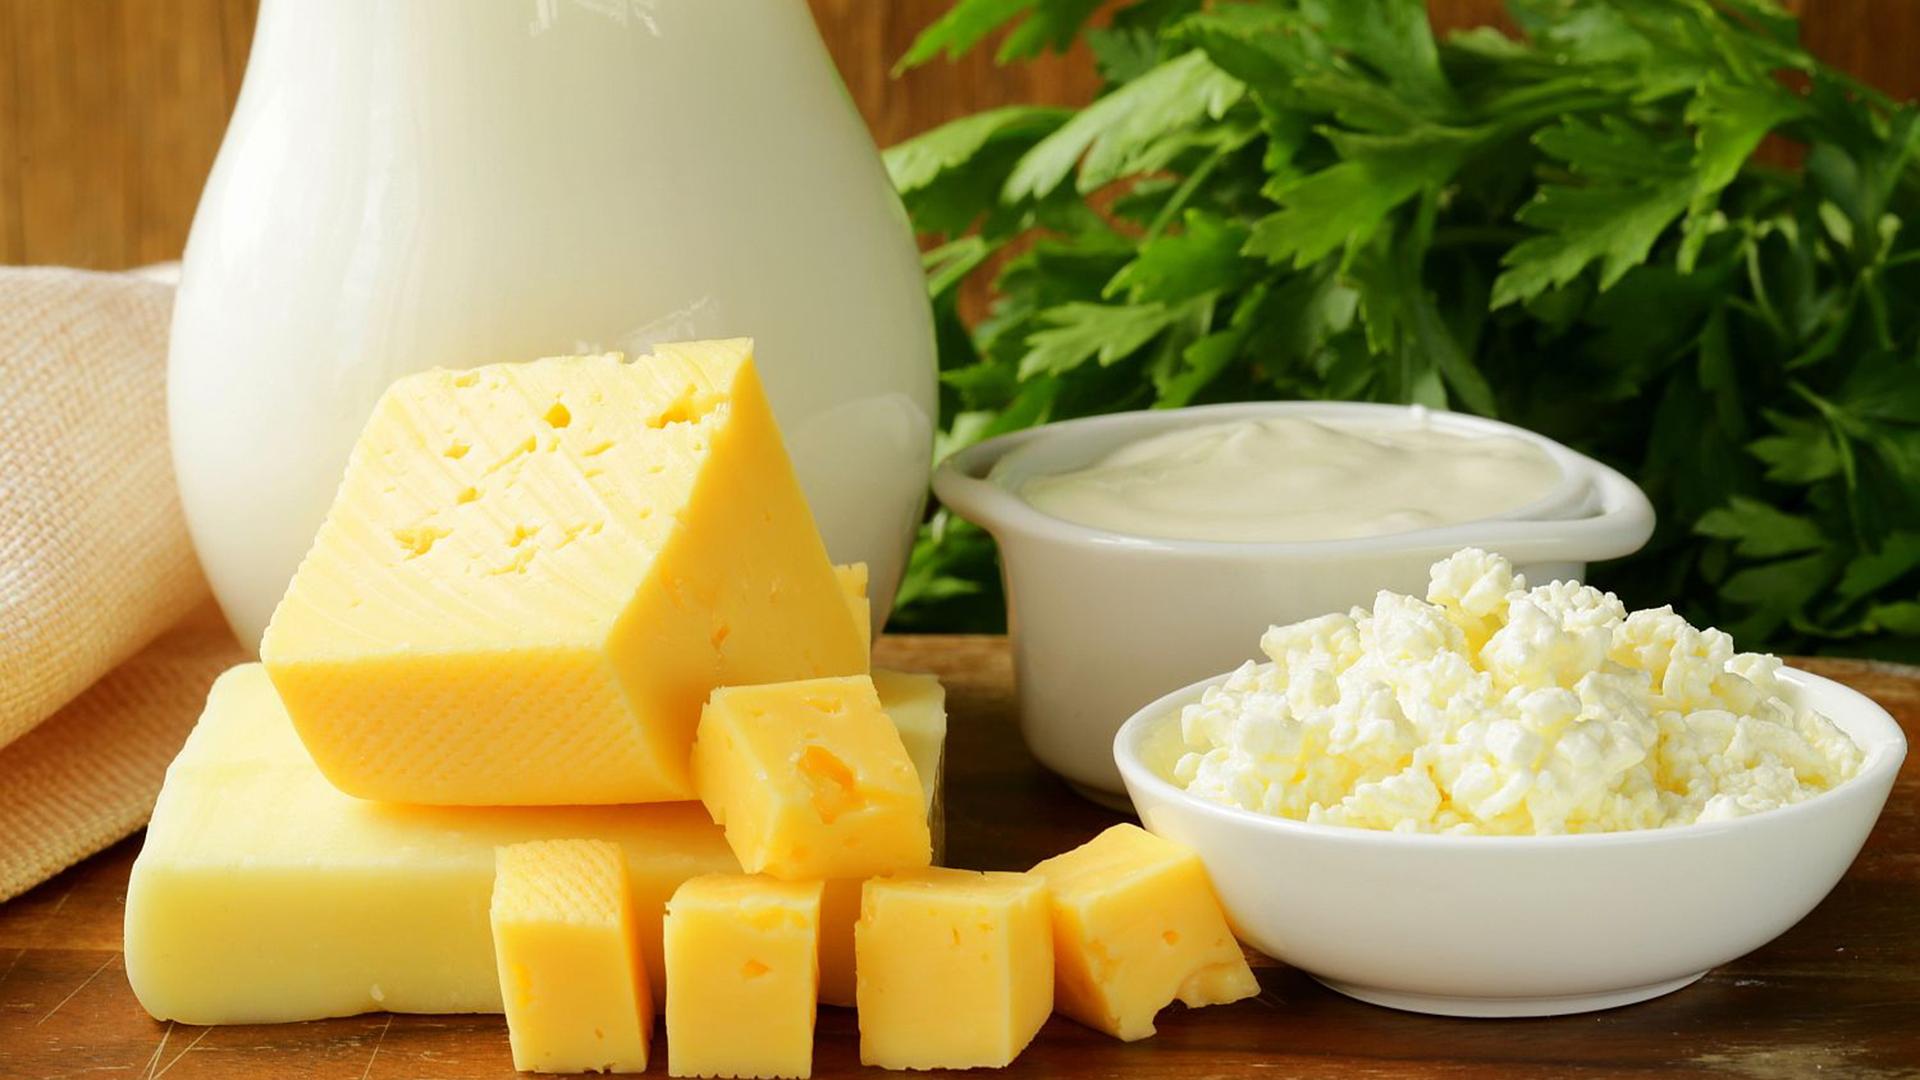 Сыр губит женщин, а йогурт — спасает